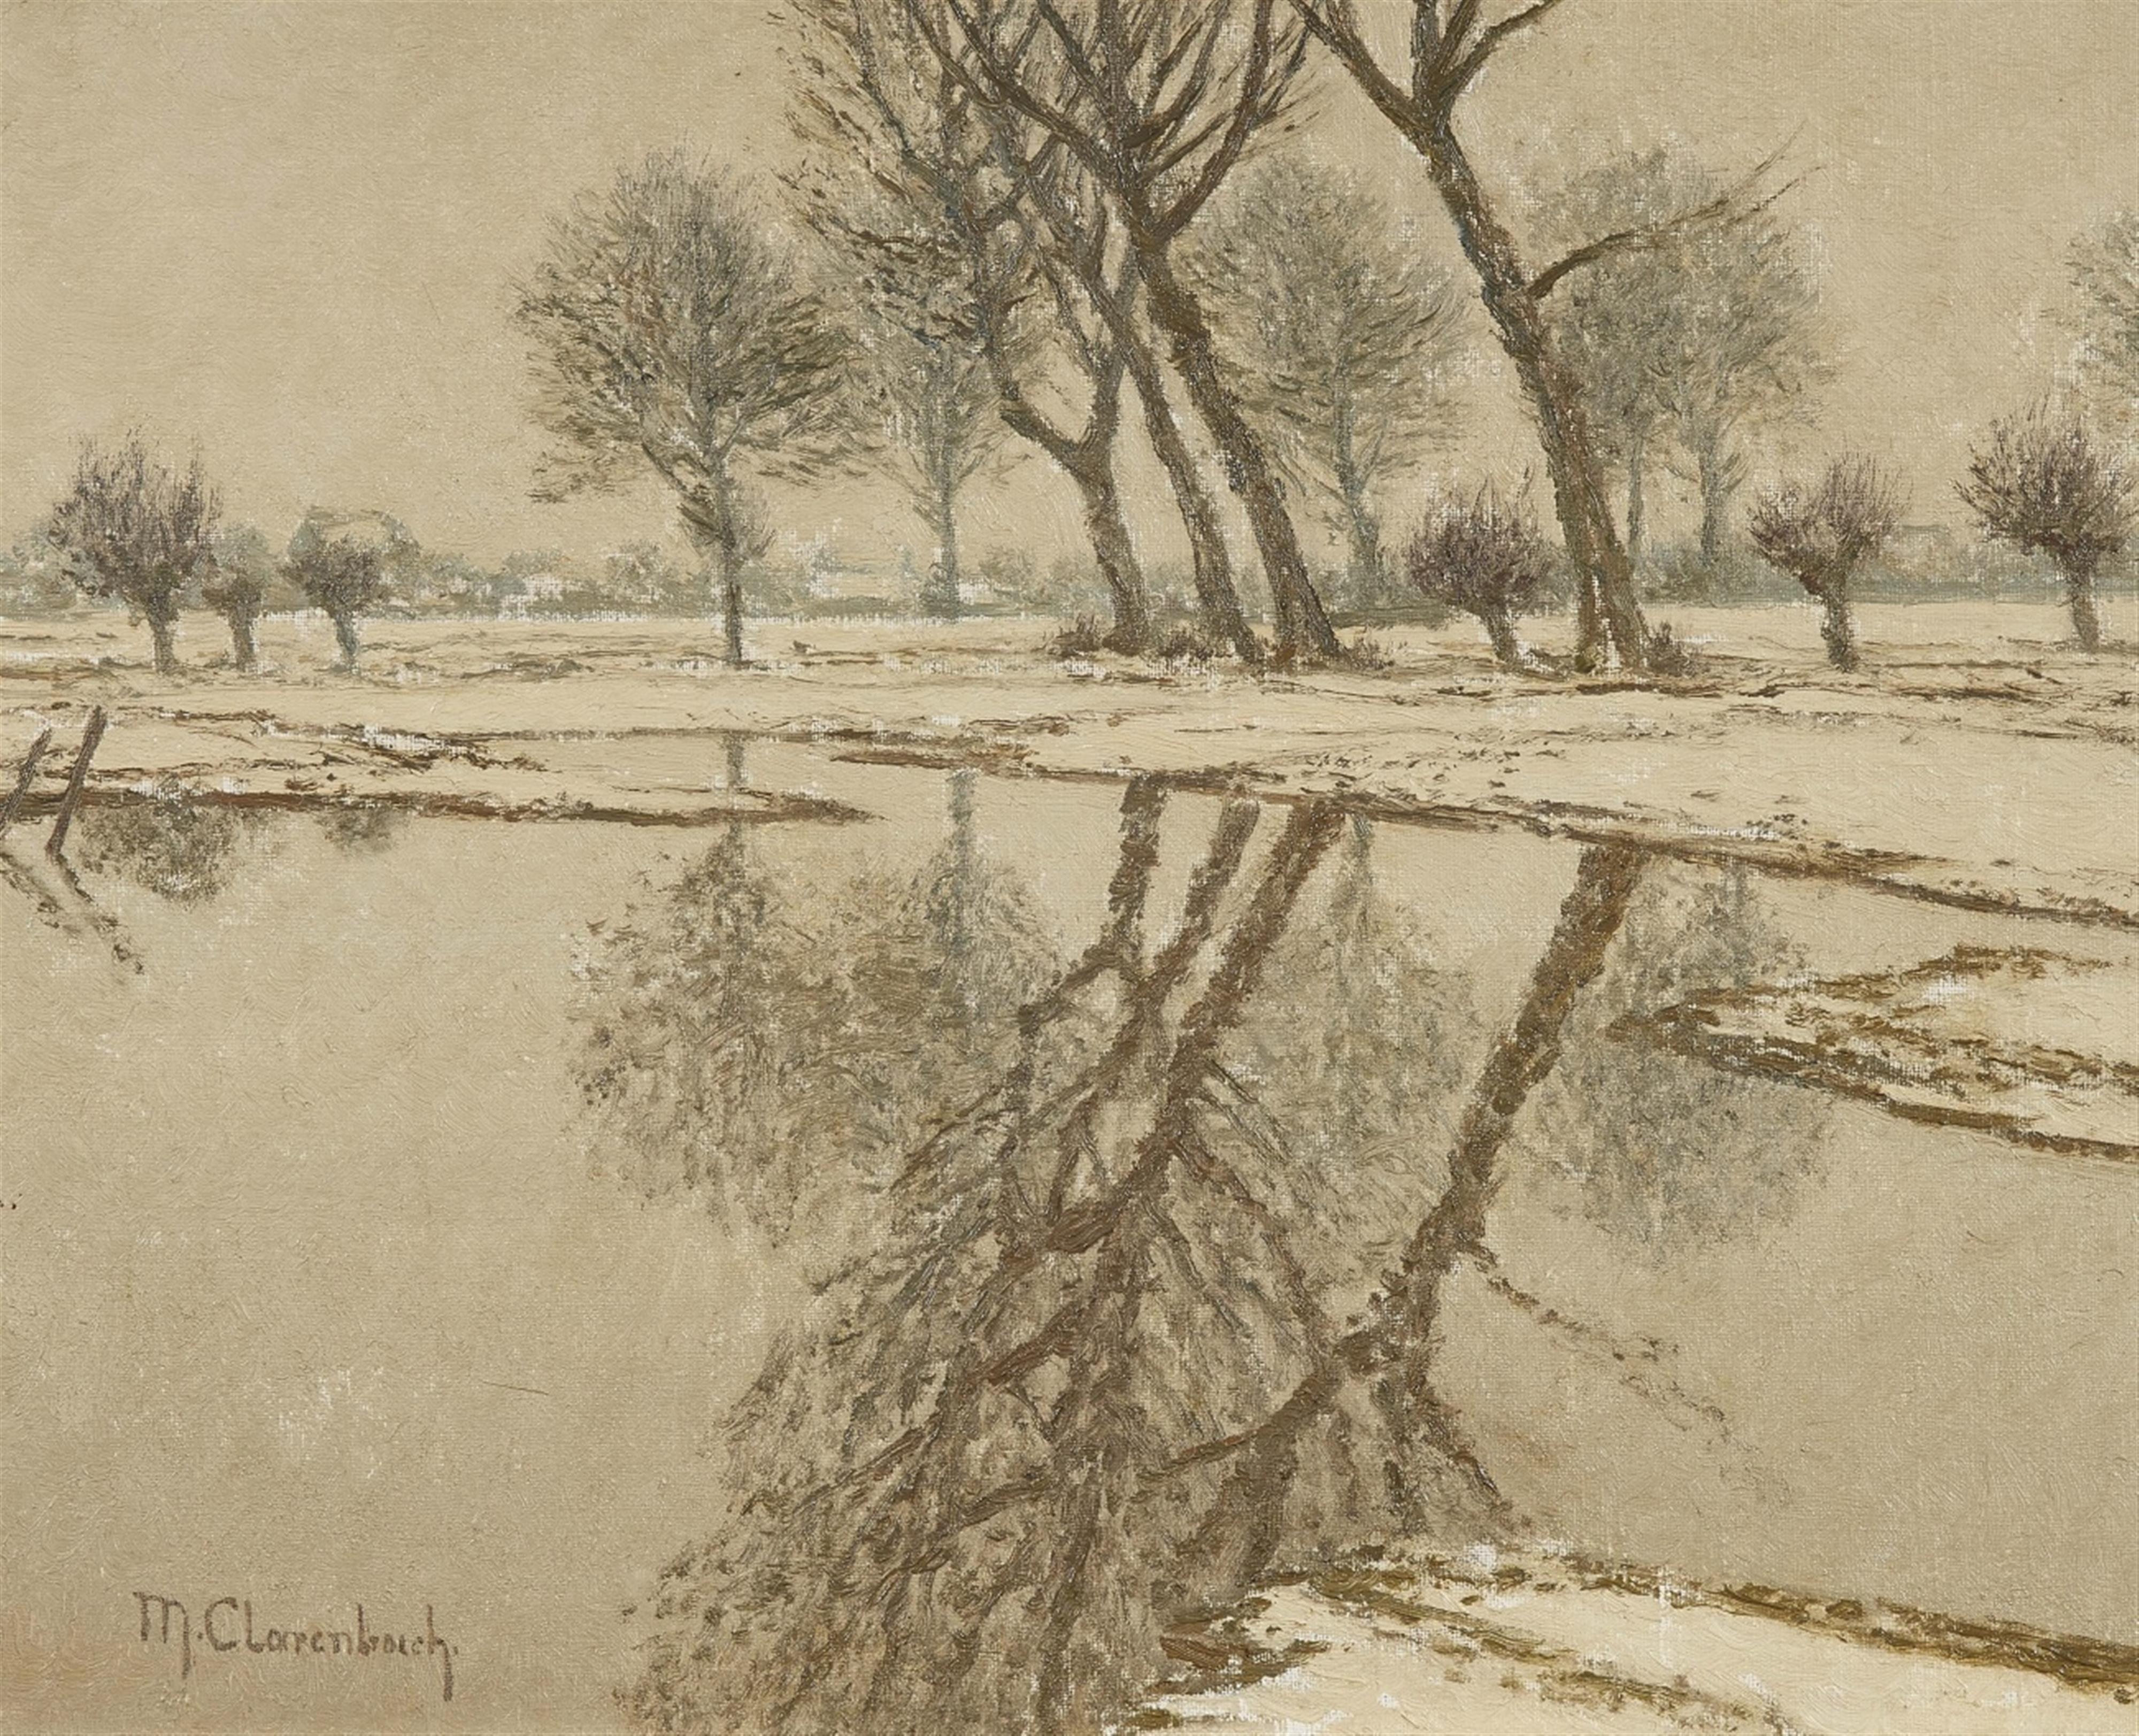 Max Clarenbach - Winterliches Hochwasser bei Wittlaer - image-1